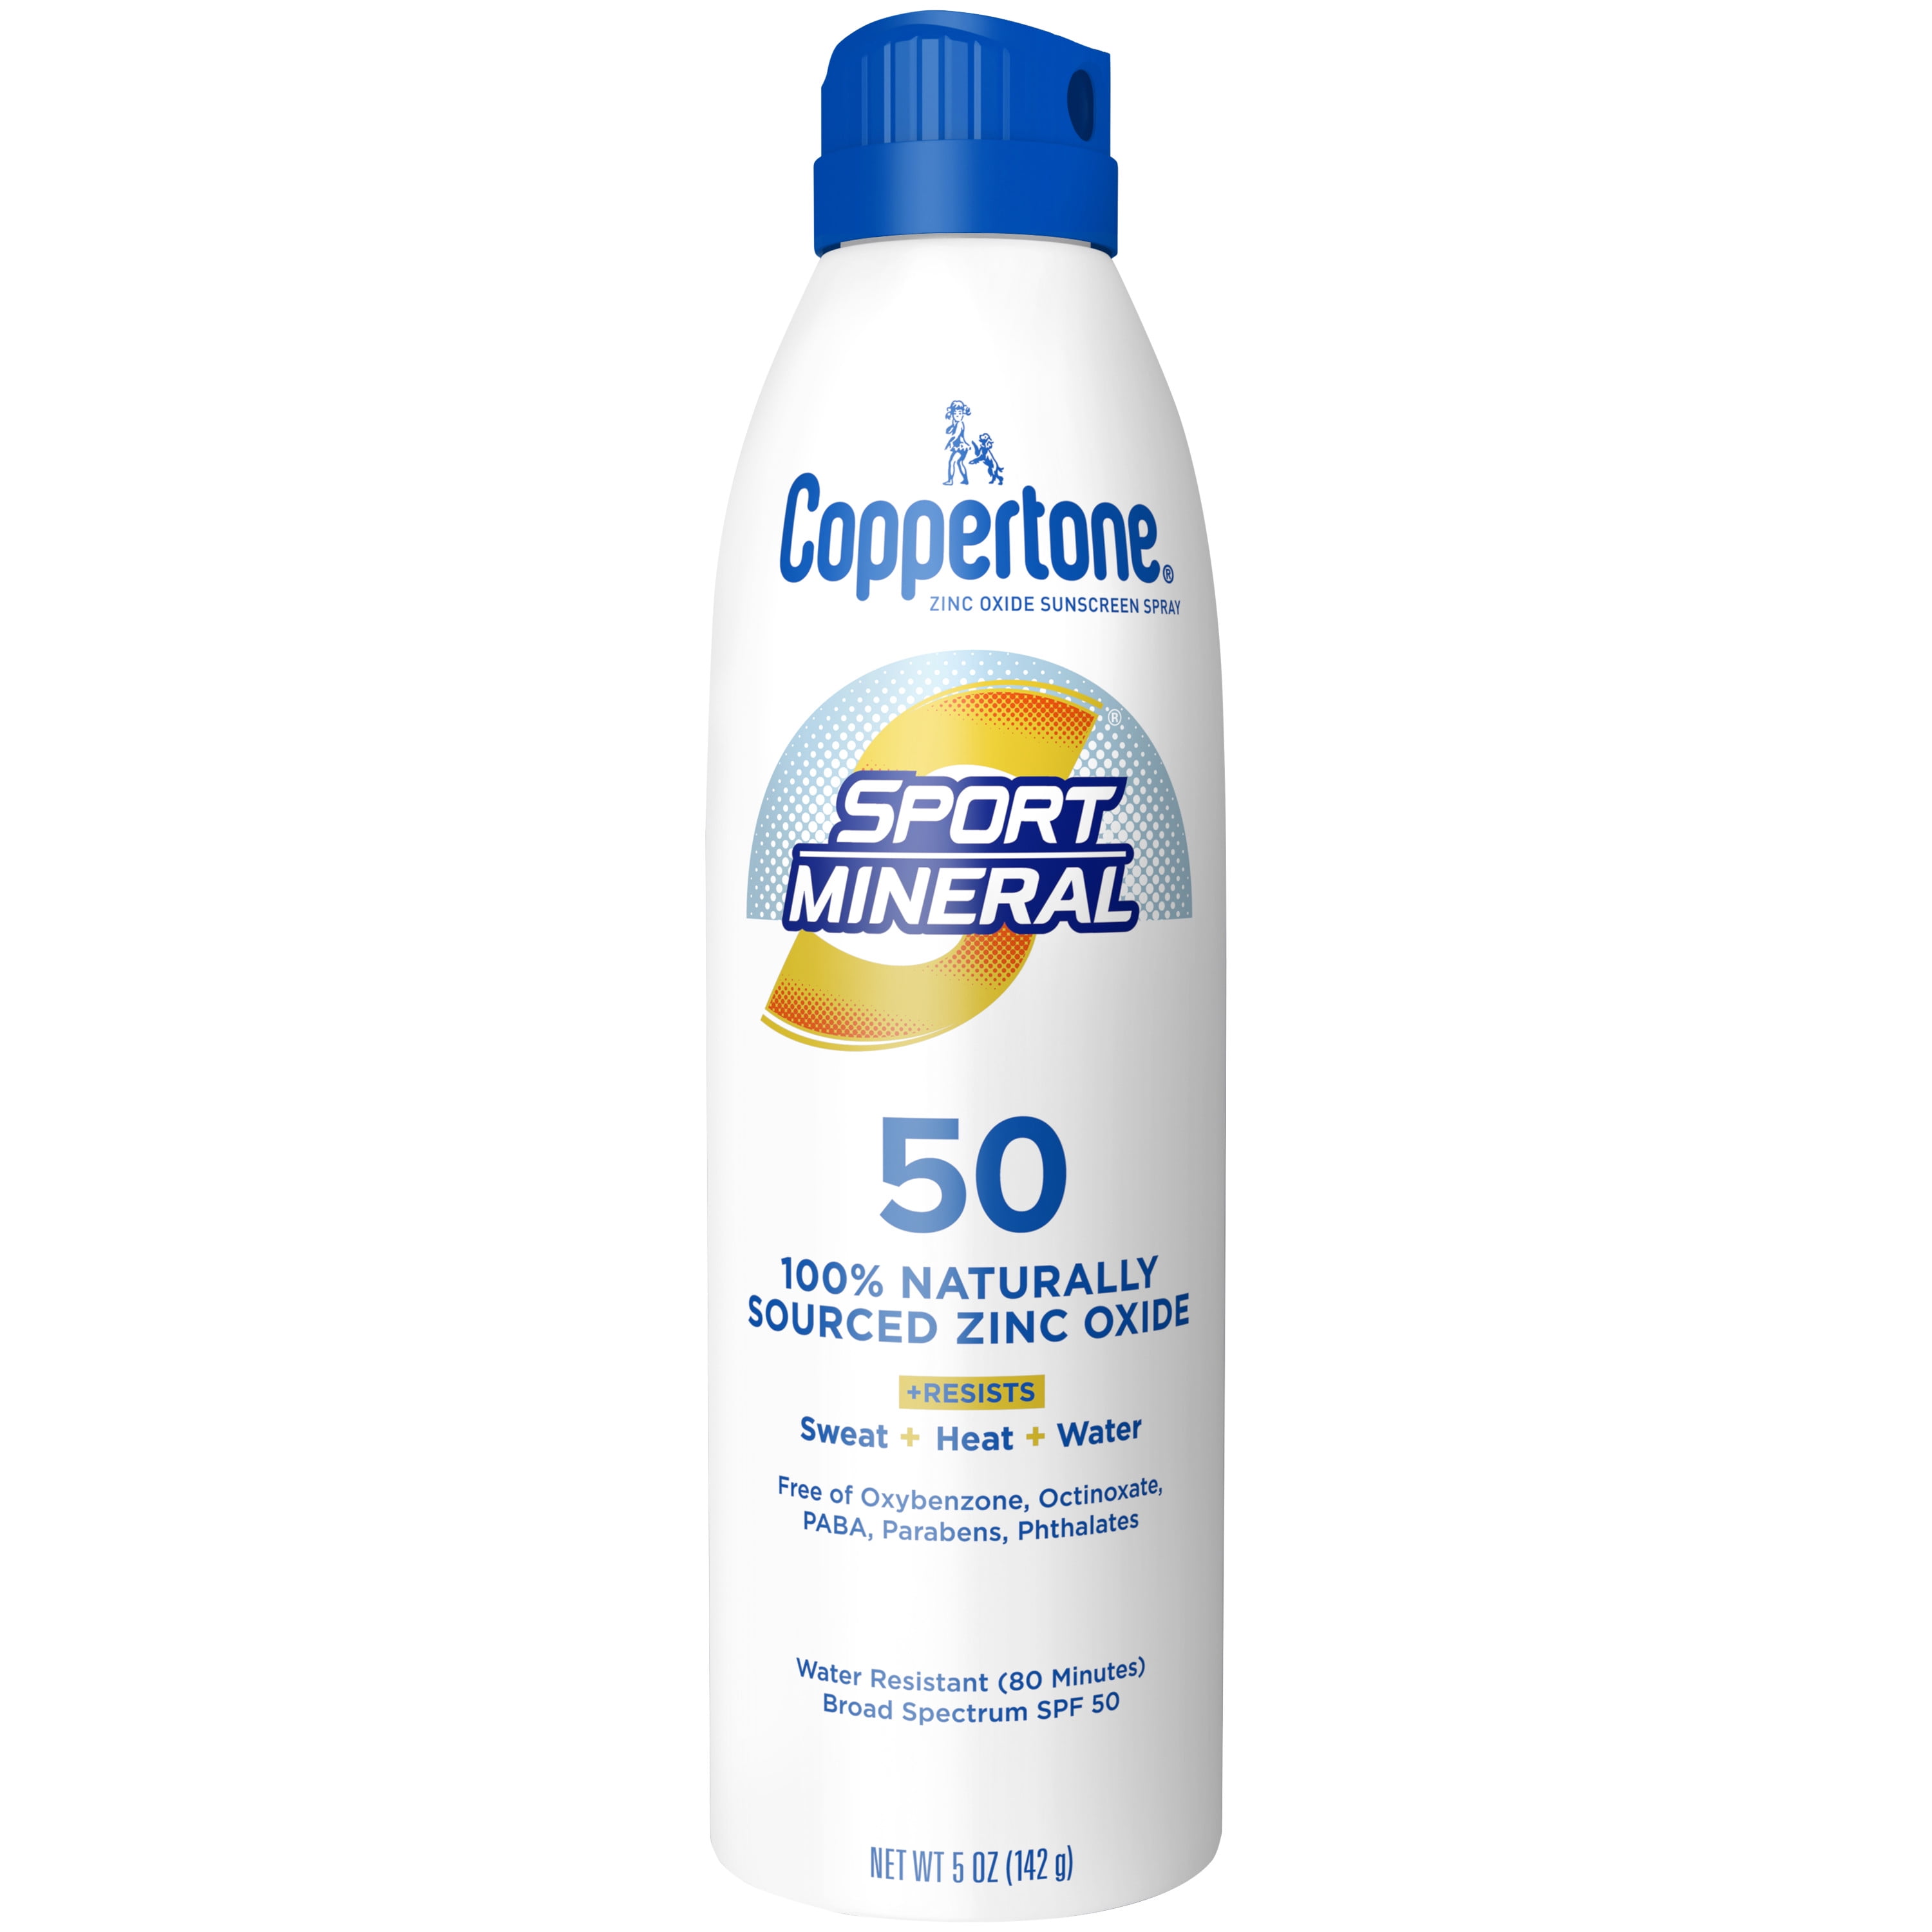 Coppertone SPORT Mineral Spray Sunscreen SPF 50, 5oz